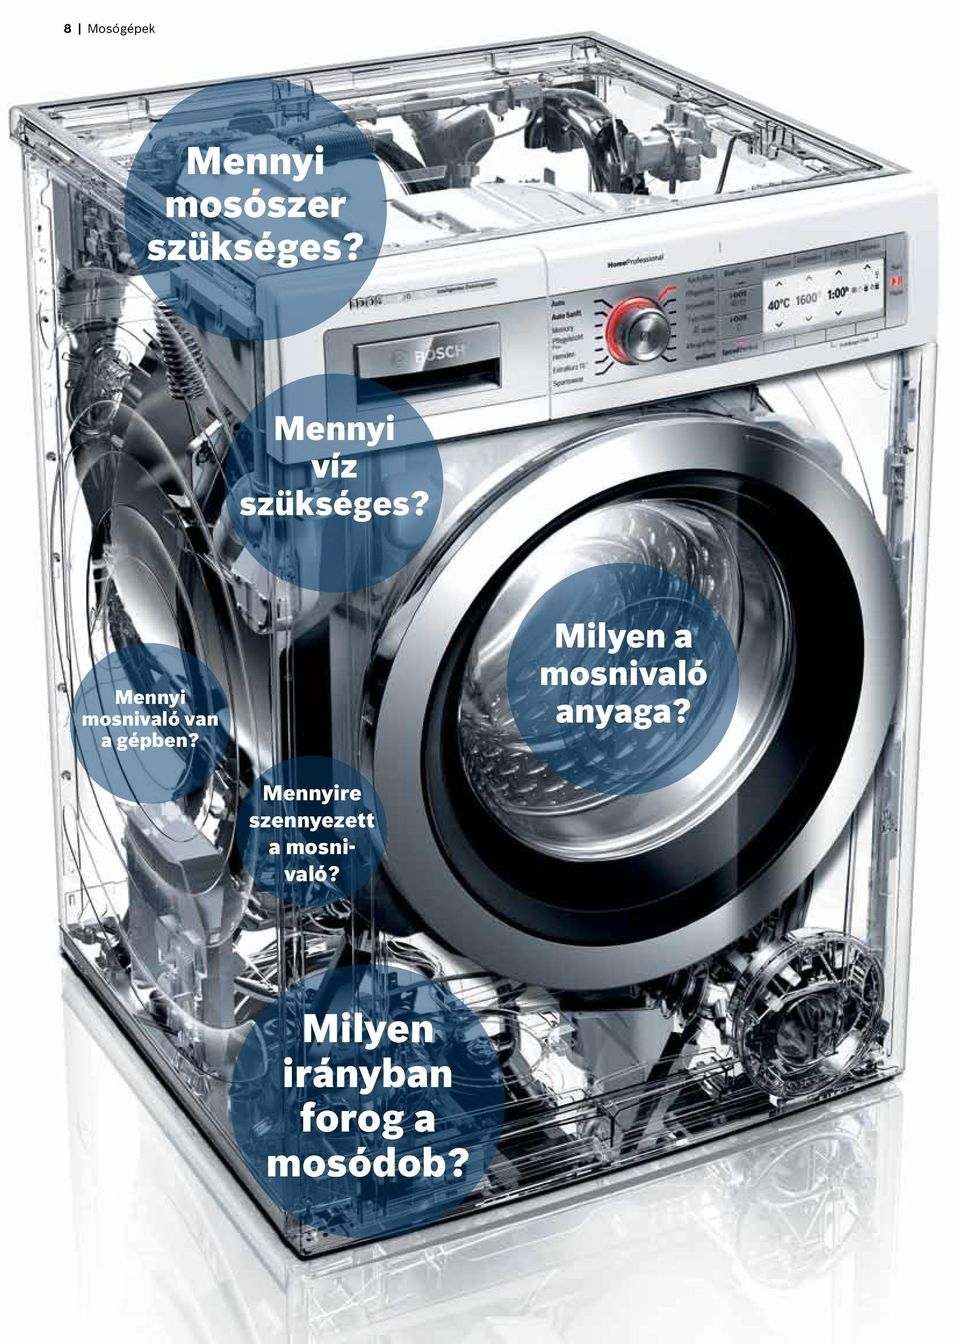 Mennyi mosnivaló van a gépben?